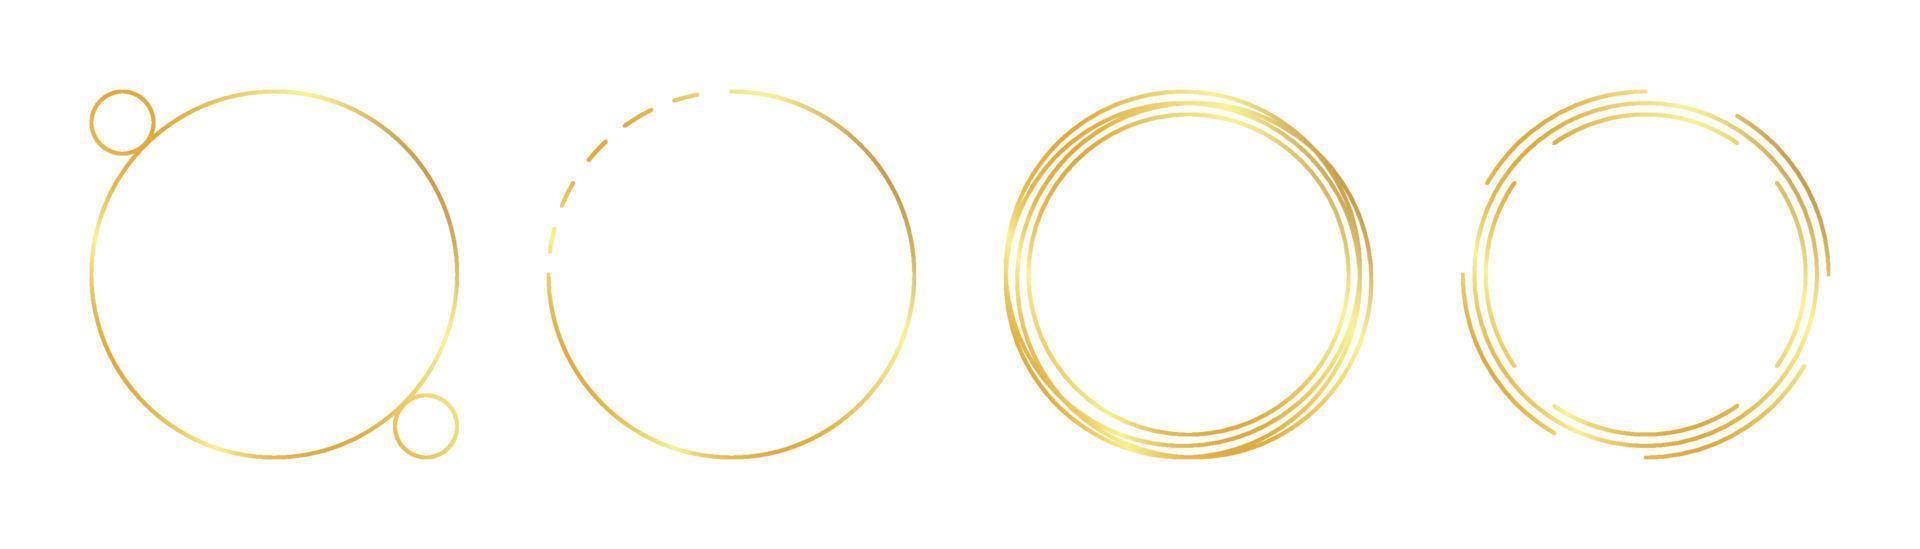 circle gold frame vector